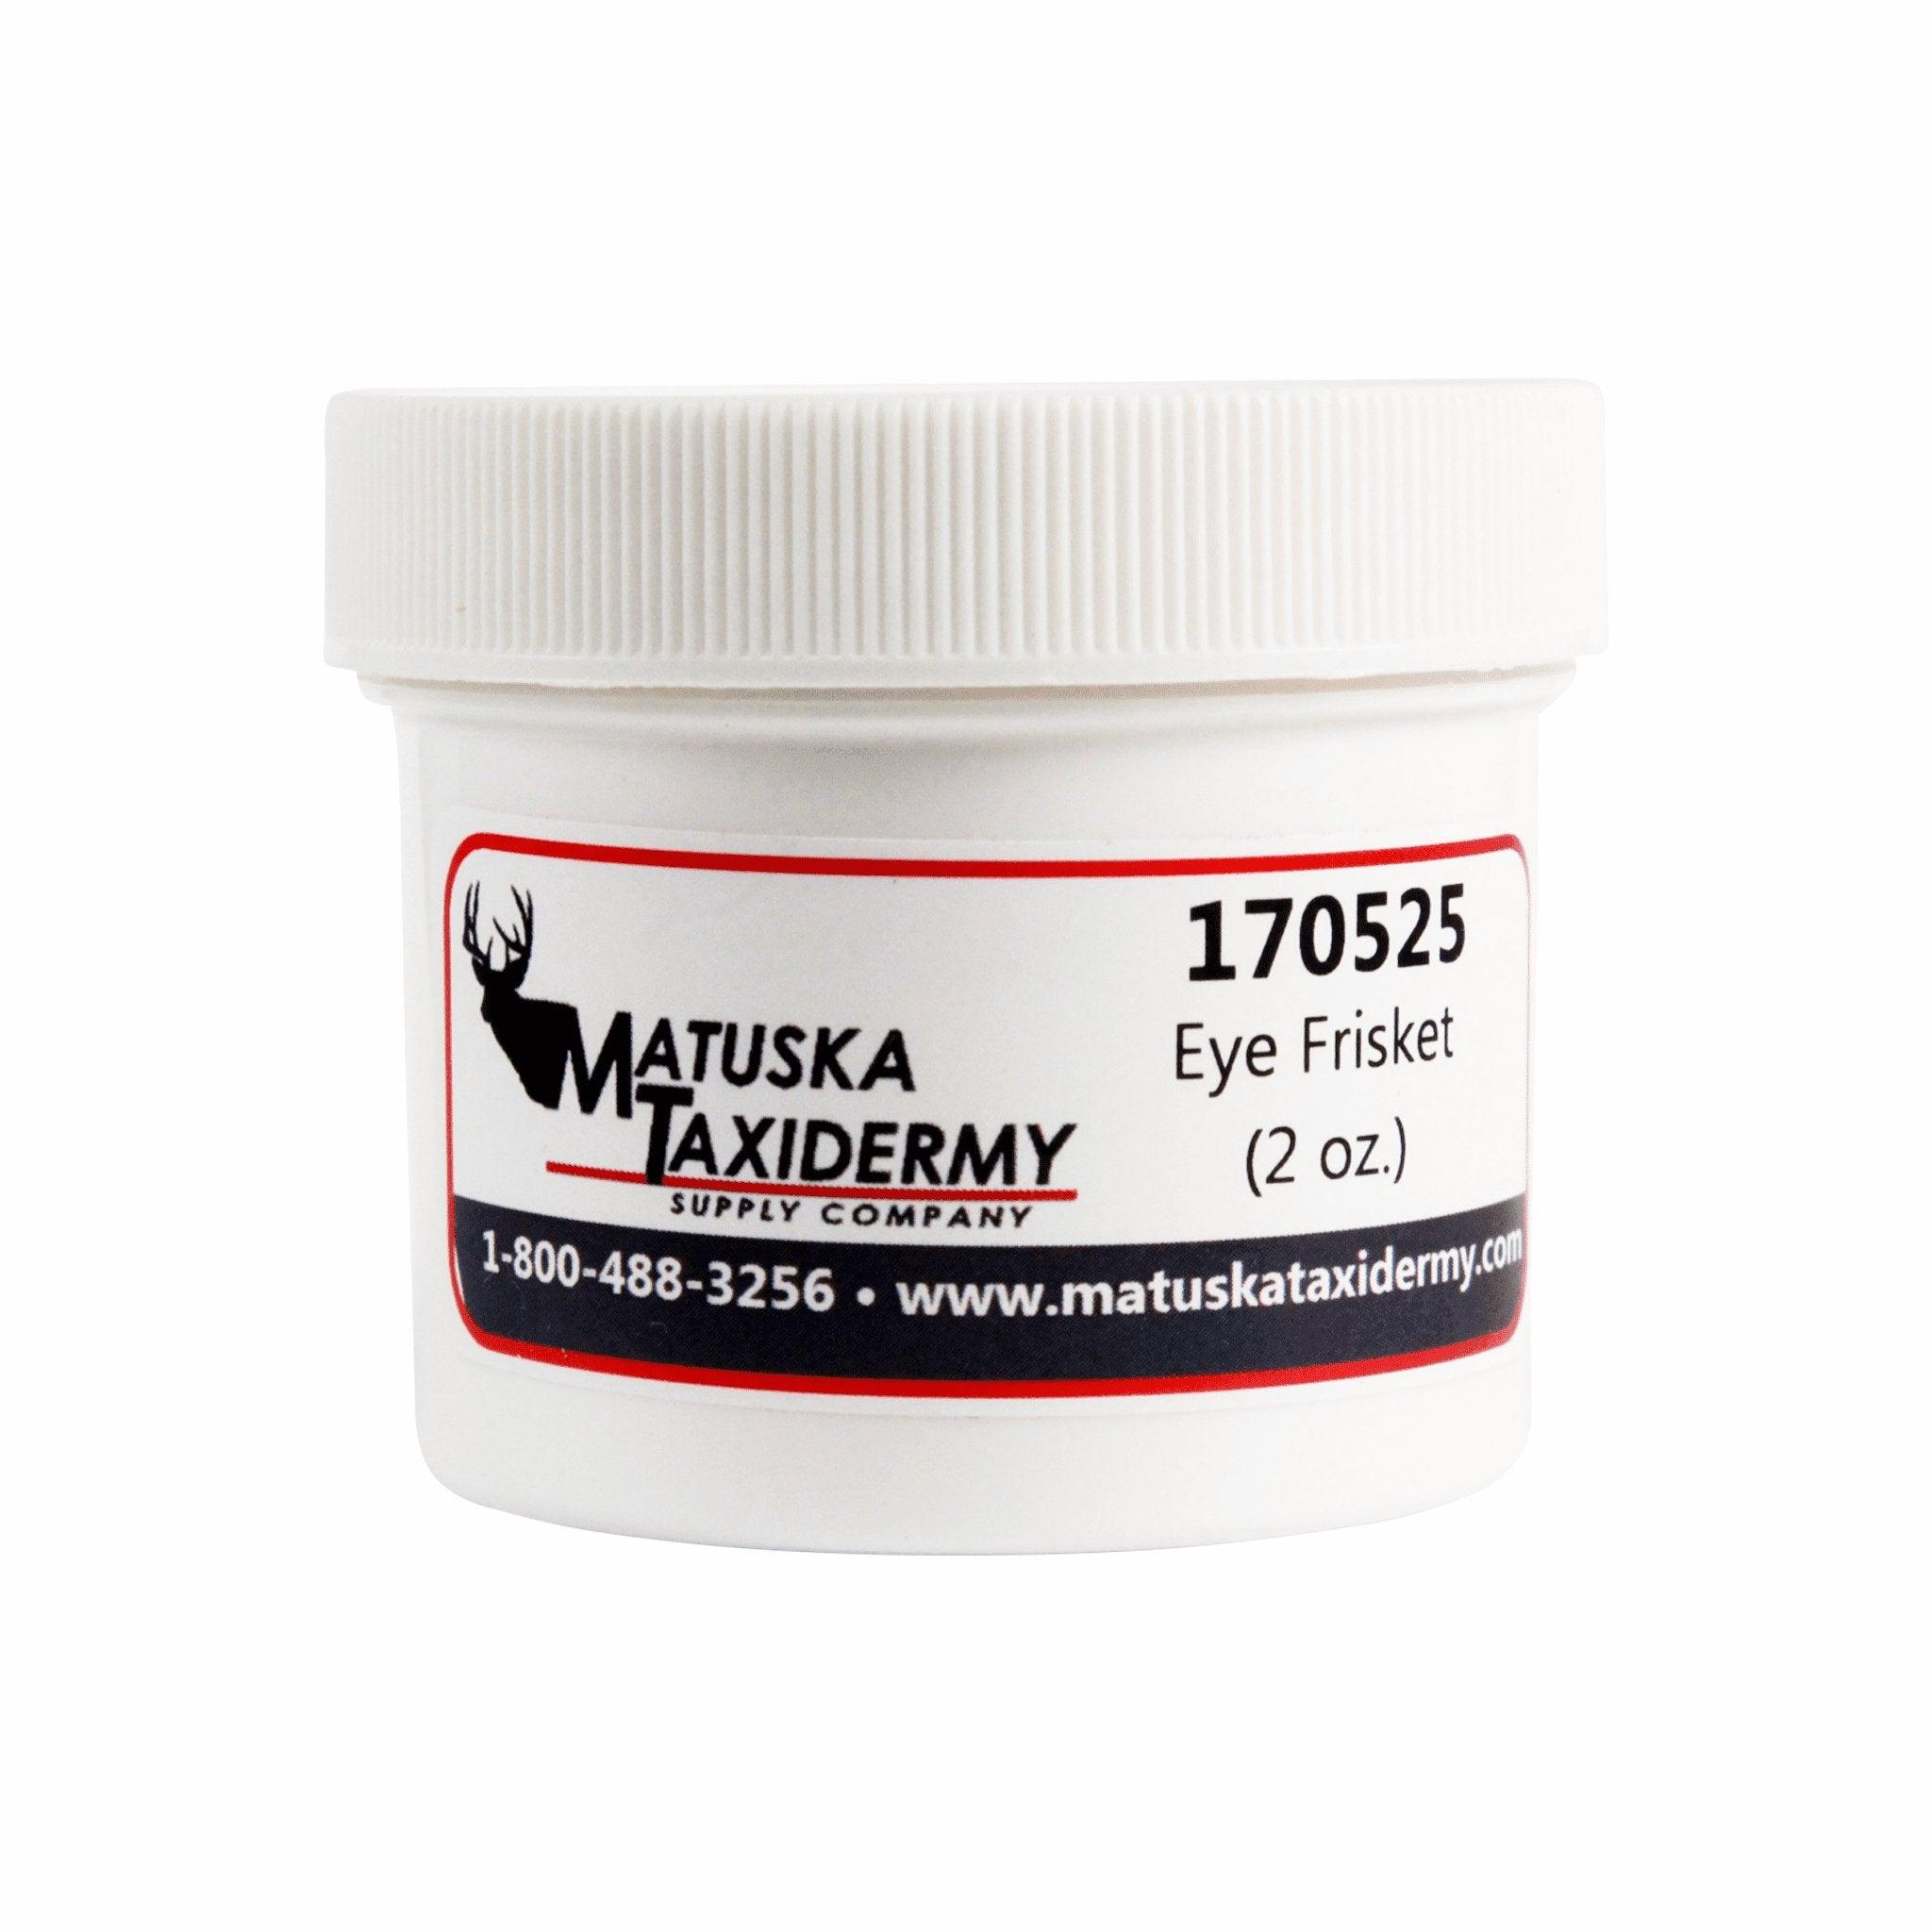 Eye Frisket - Matuska Taxidermy Supply Company